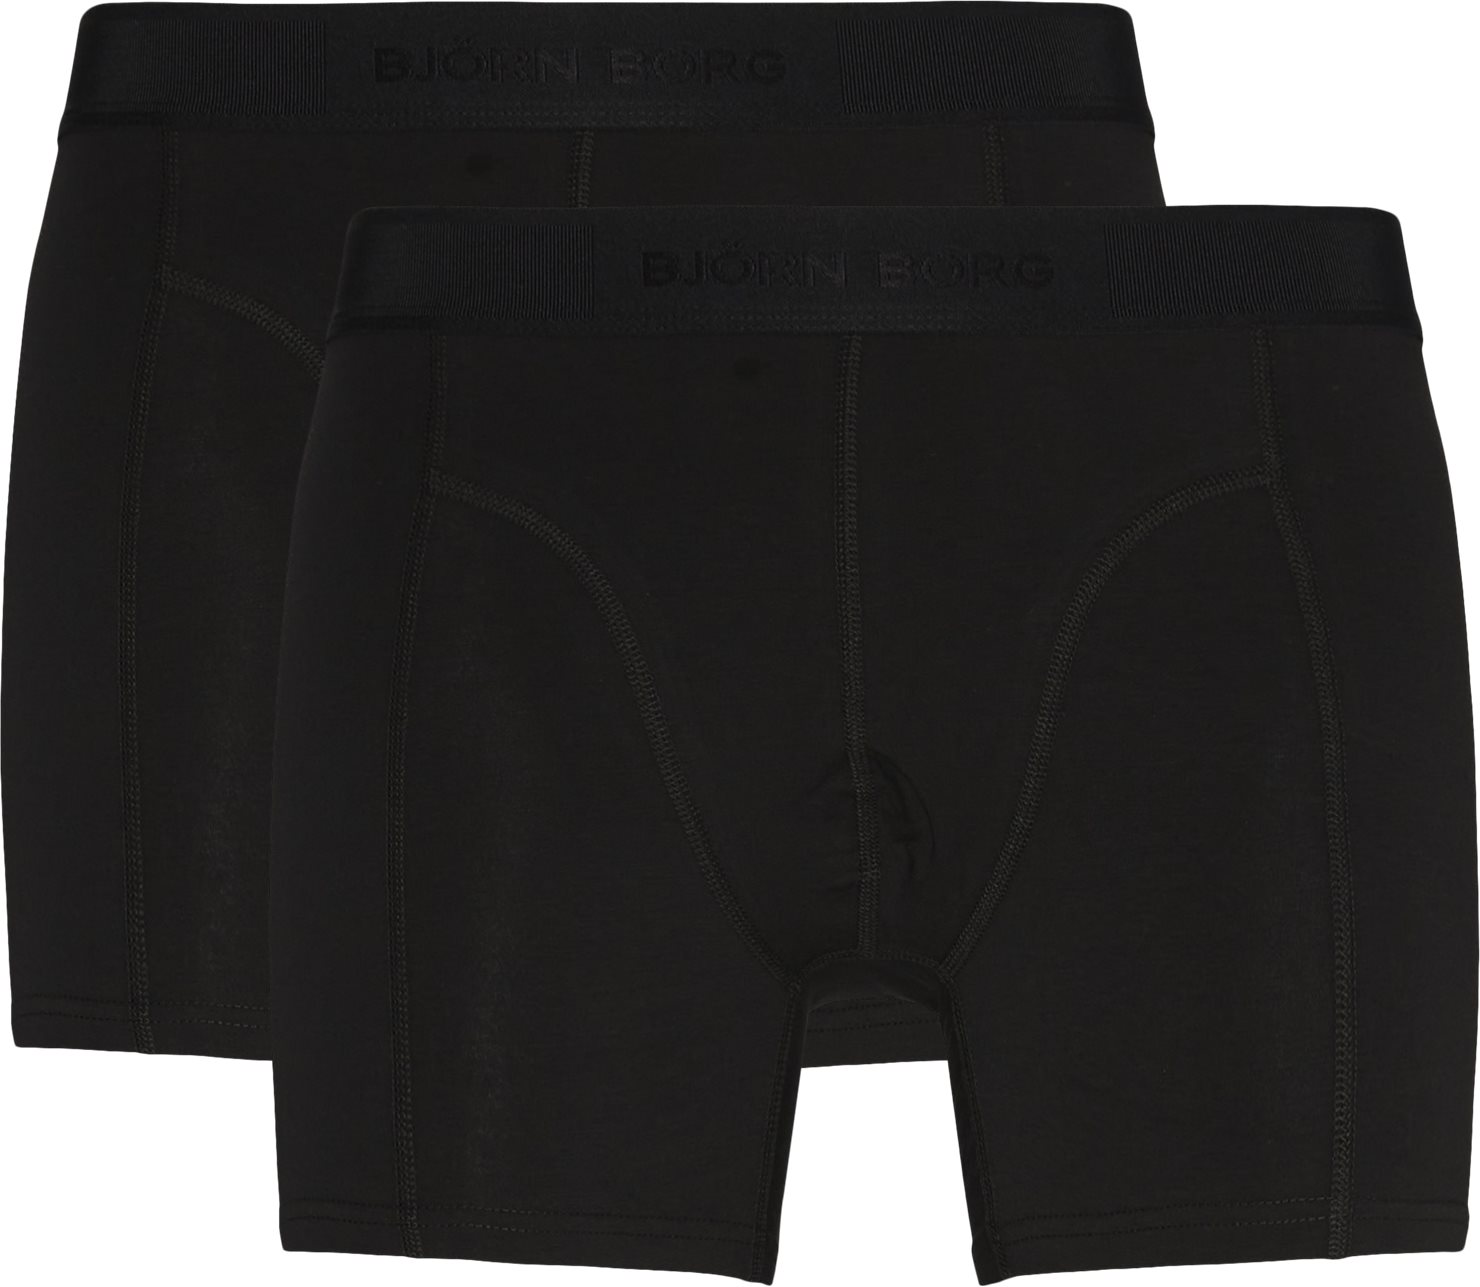 Core Trunks - Underwear - Black